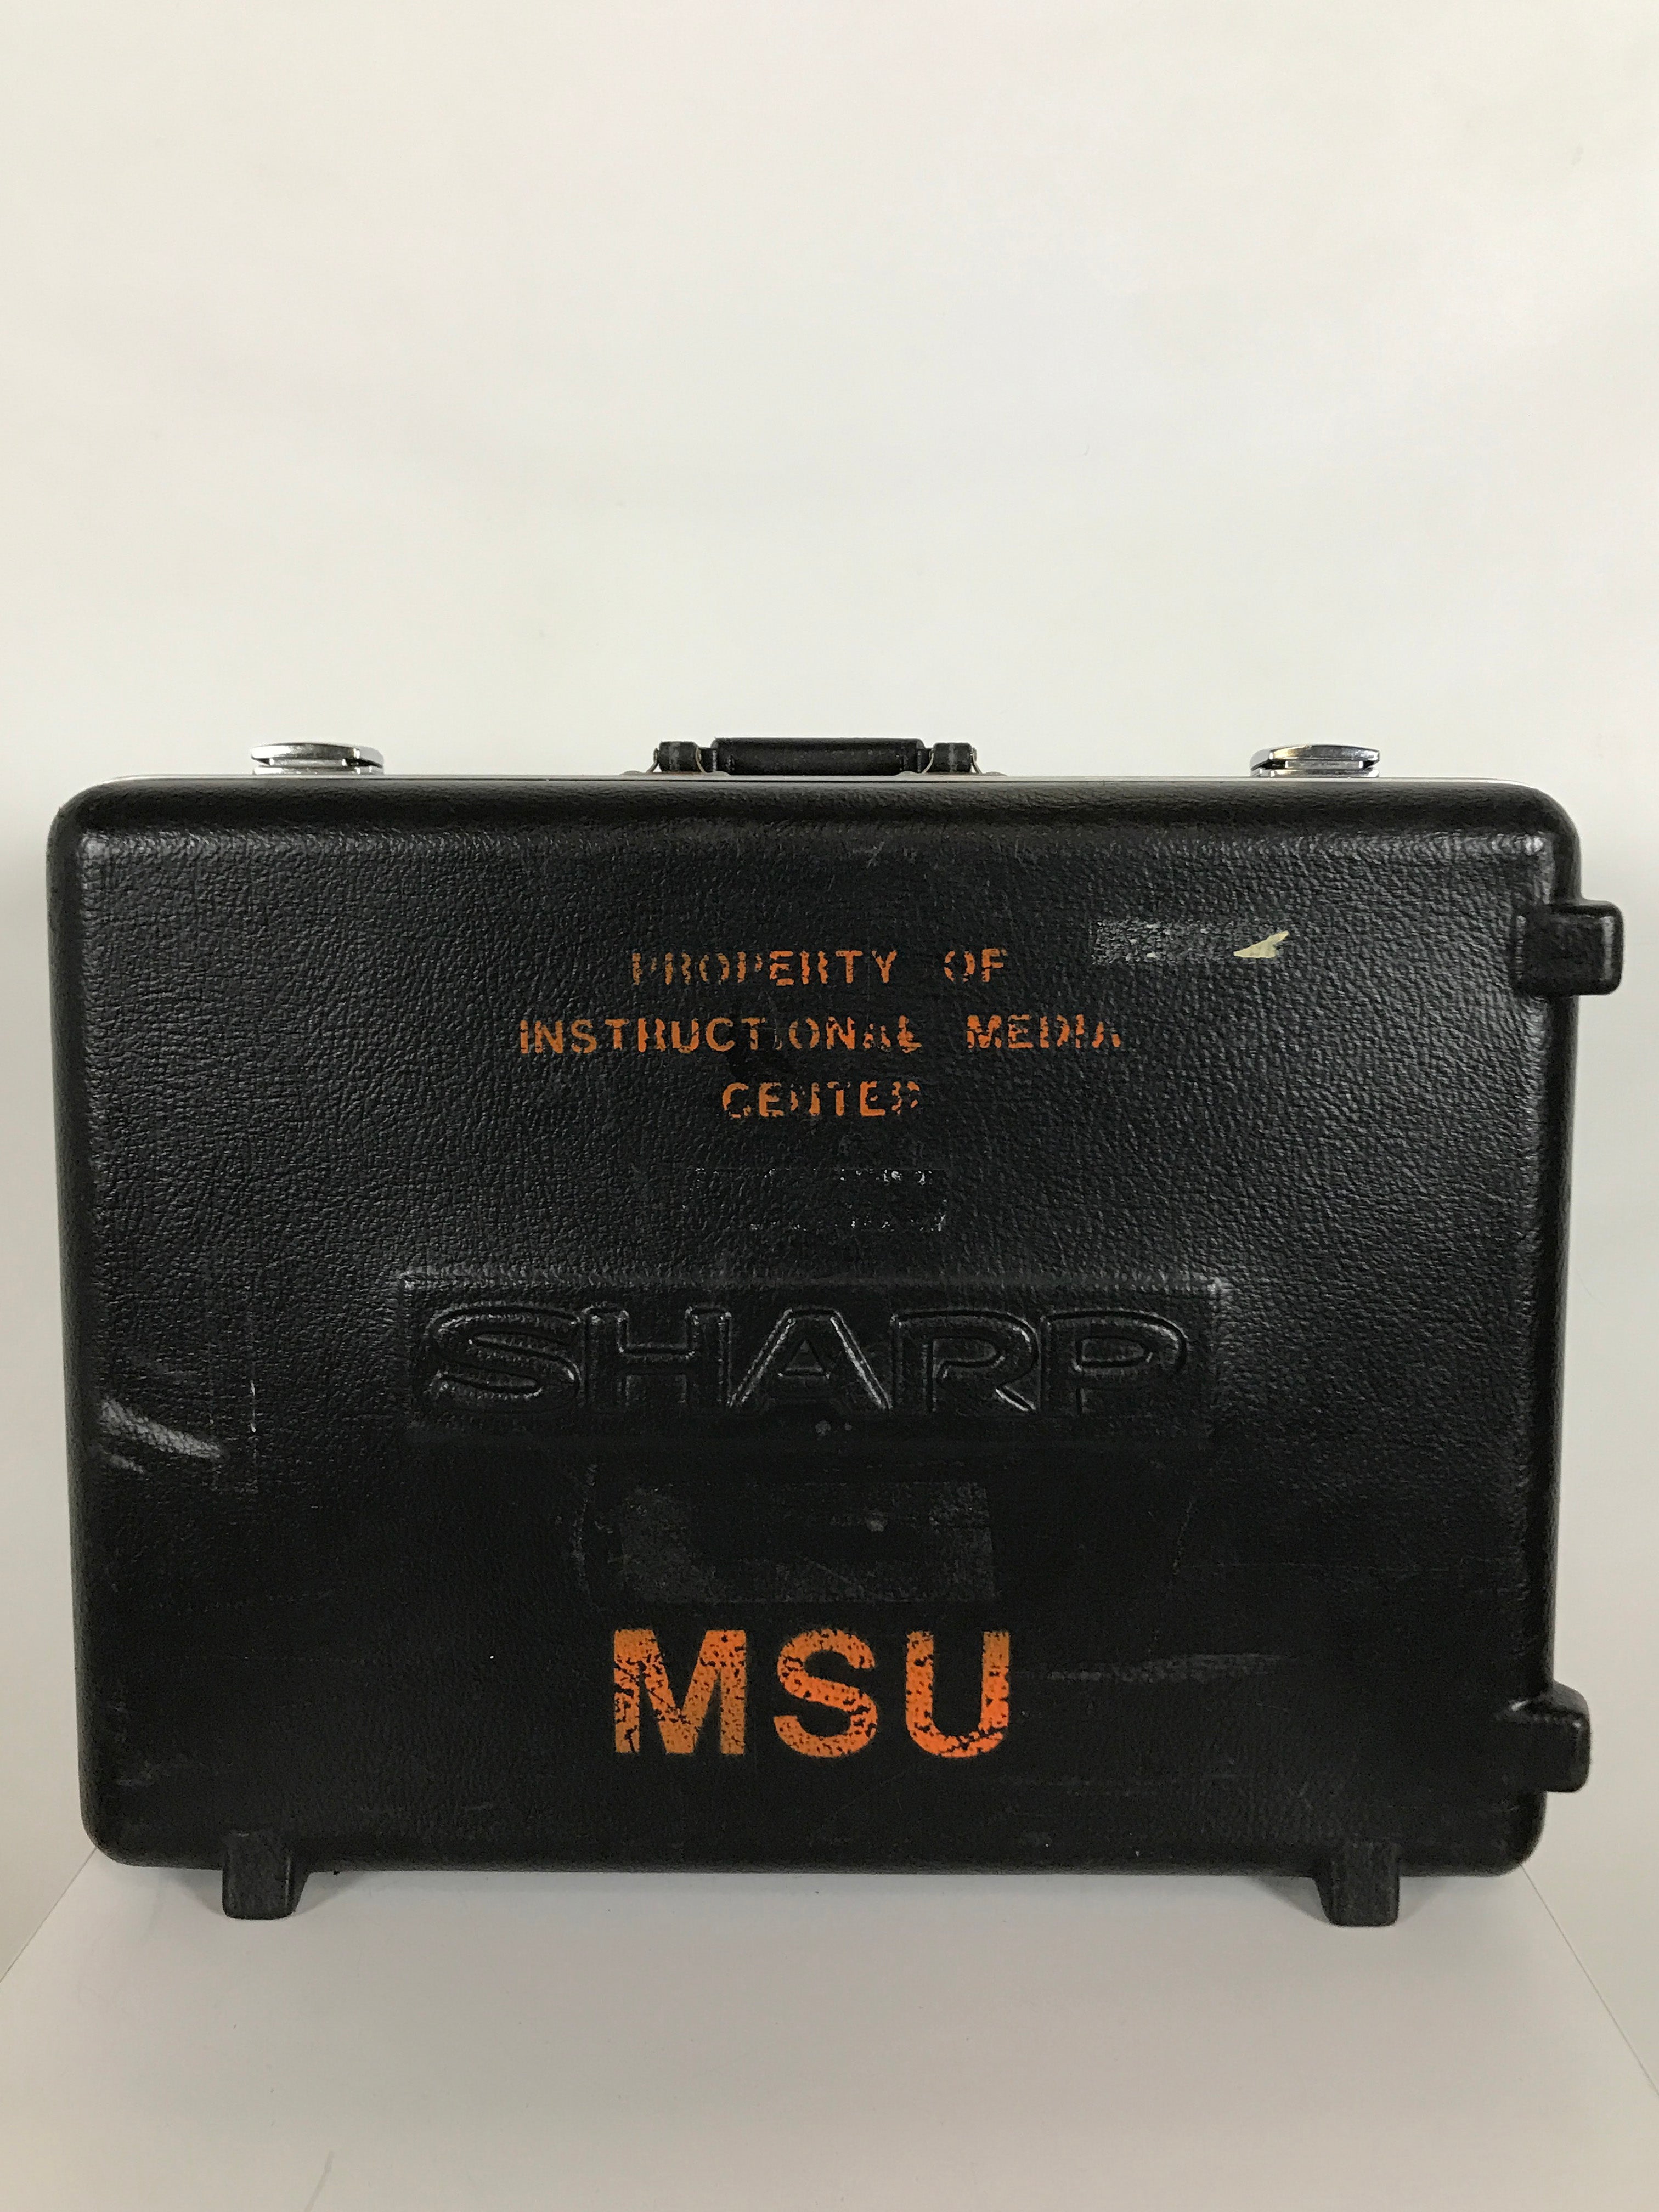 Sharp Black Plastic AV Equipment Carry Case